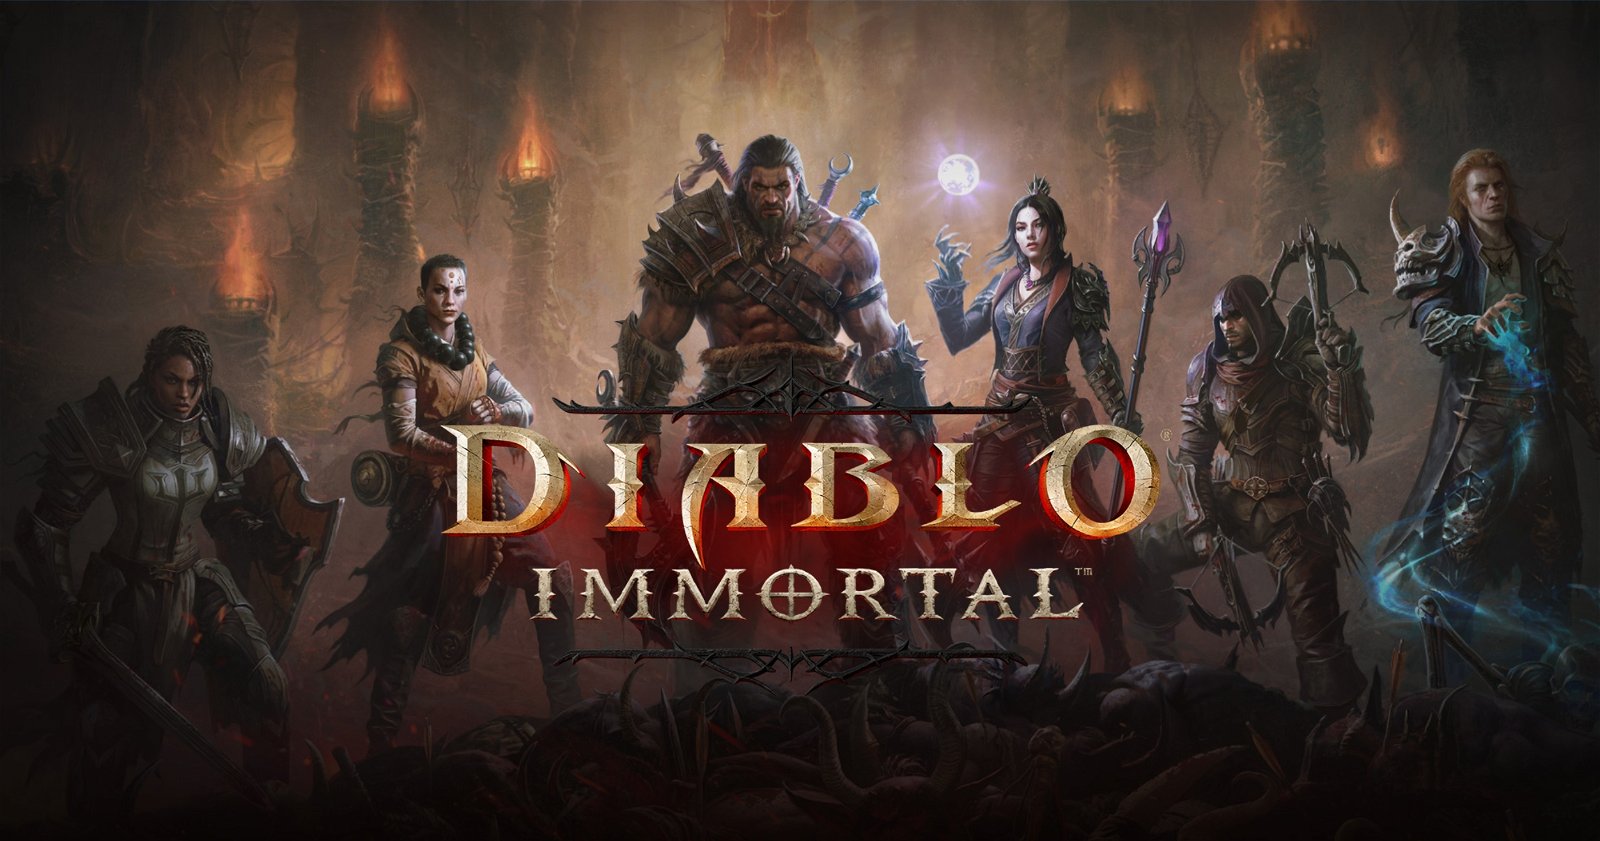 Tras años de espera, Activision por fin ha revelado la fecha definitiva para Diablo Immortal